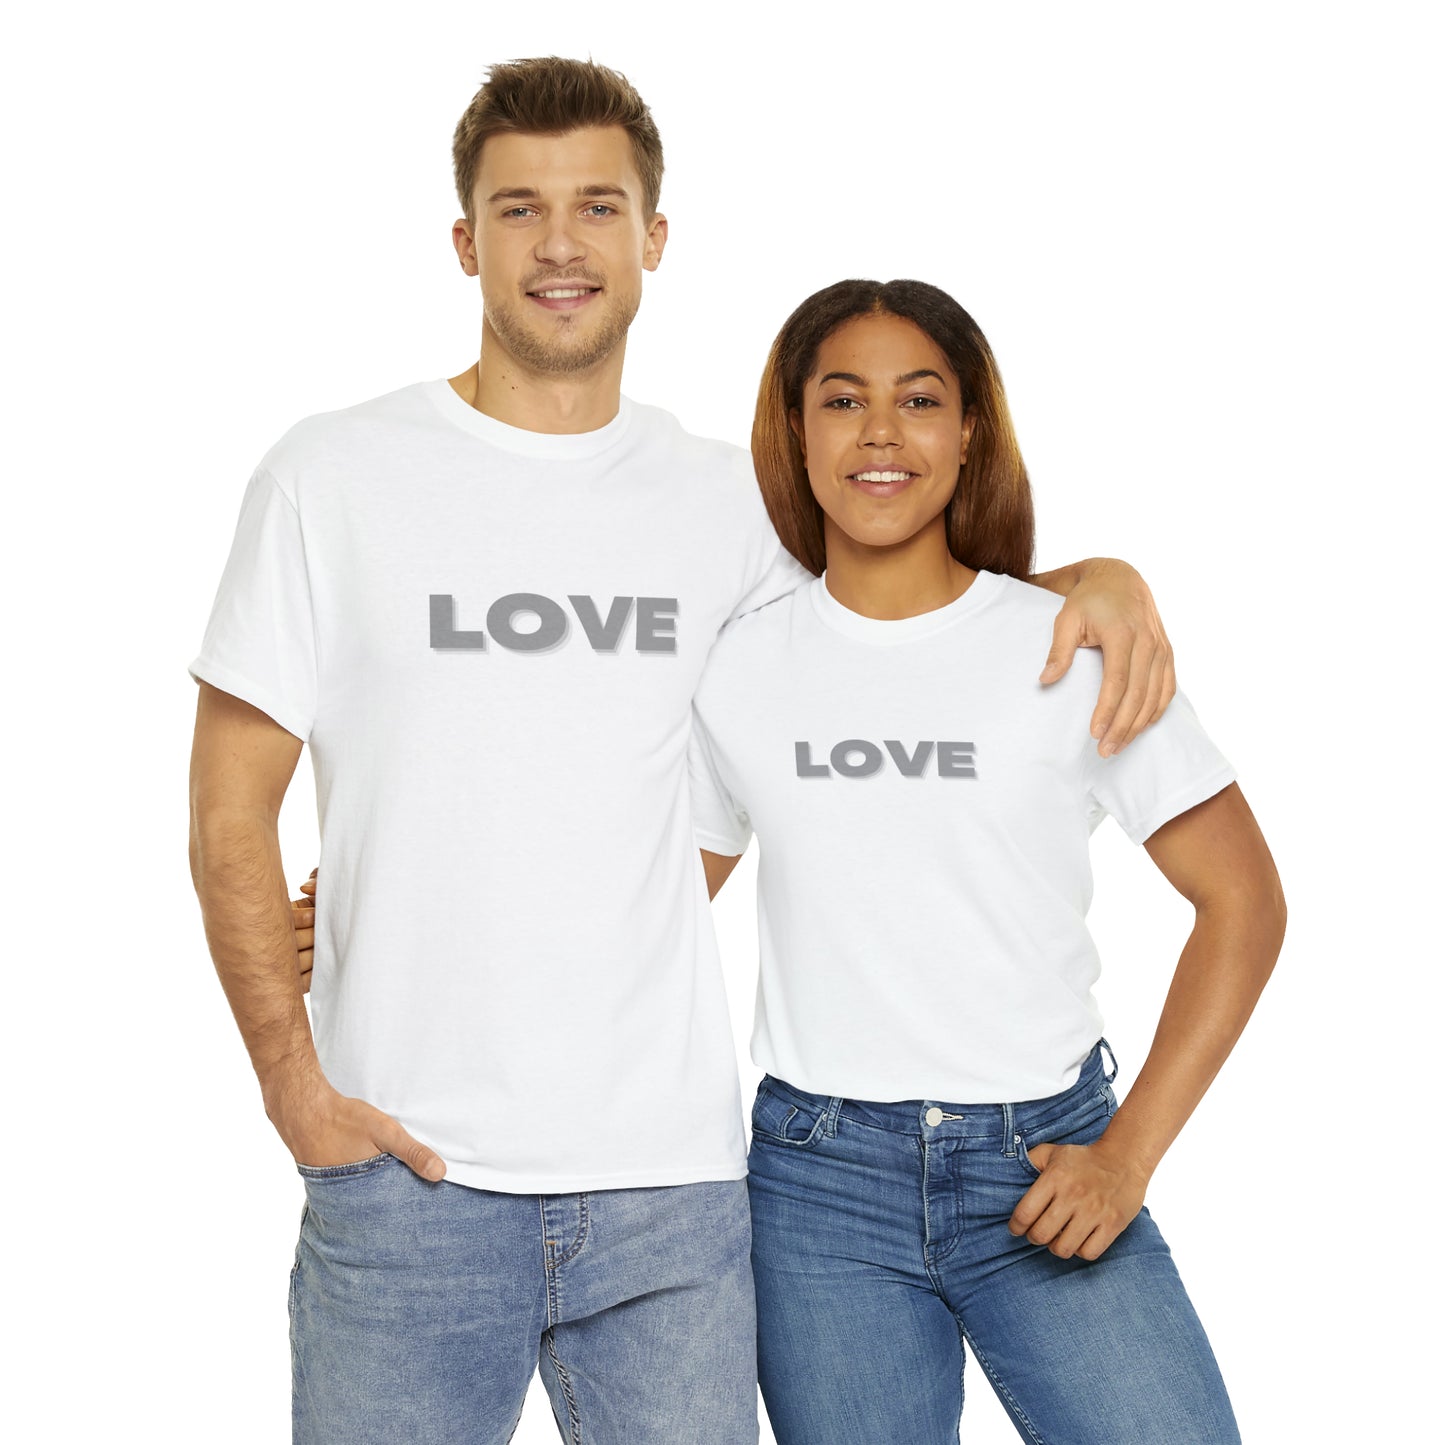 LOVE Motivational T-Shirt, Inspirational Shirt, Love Top